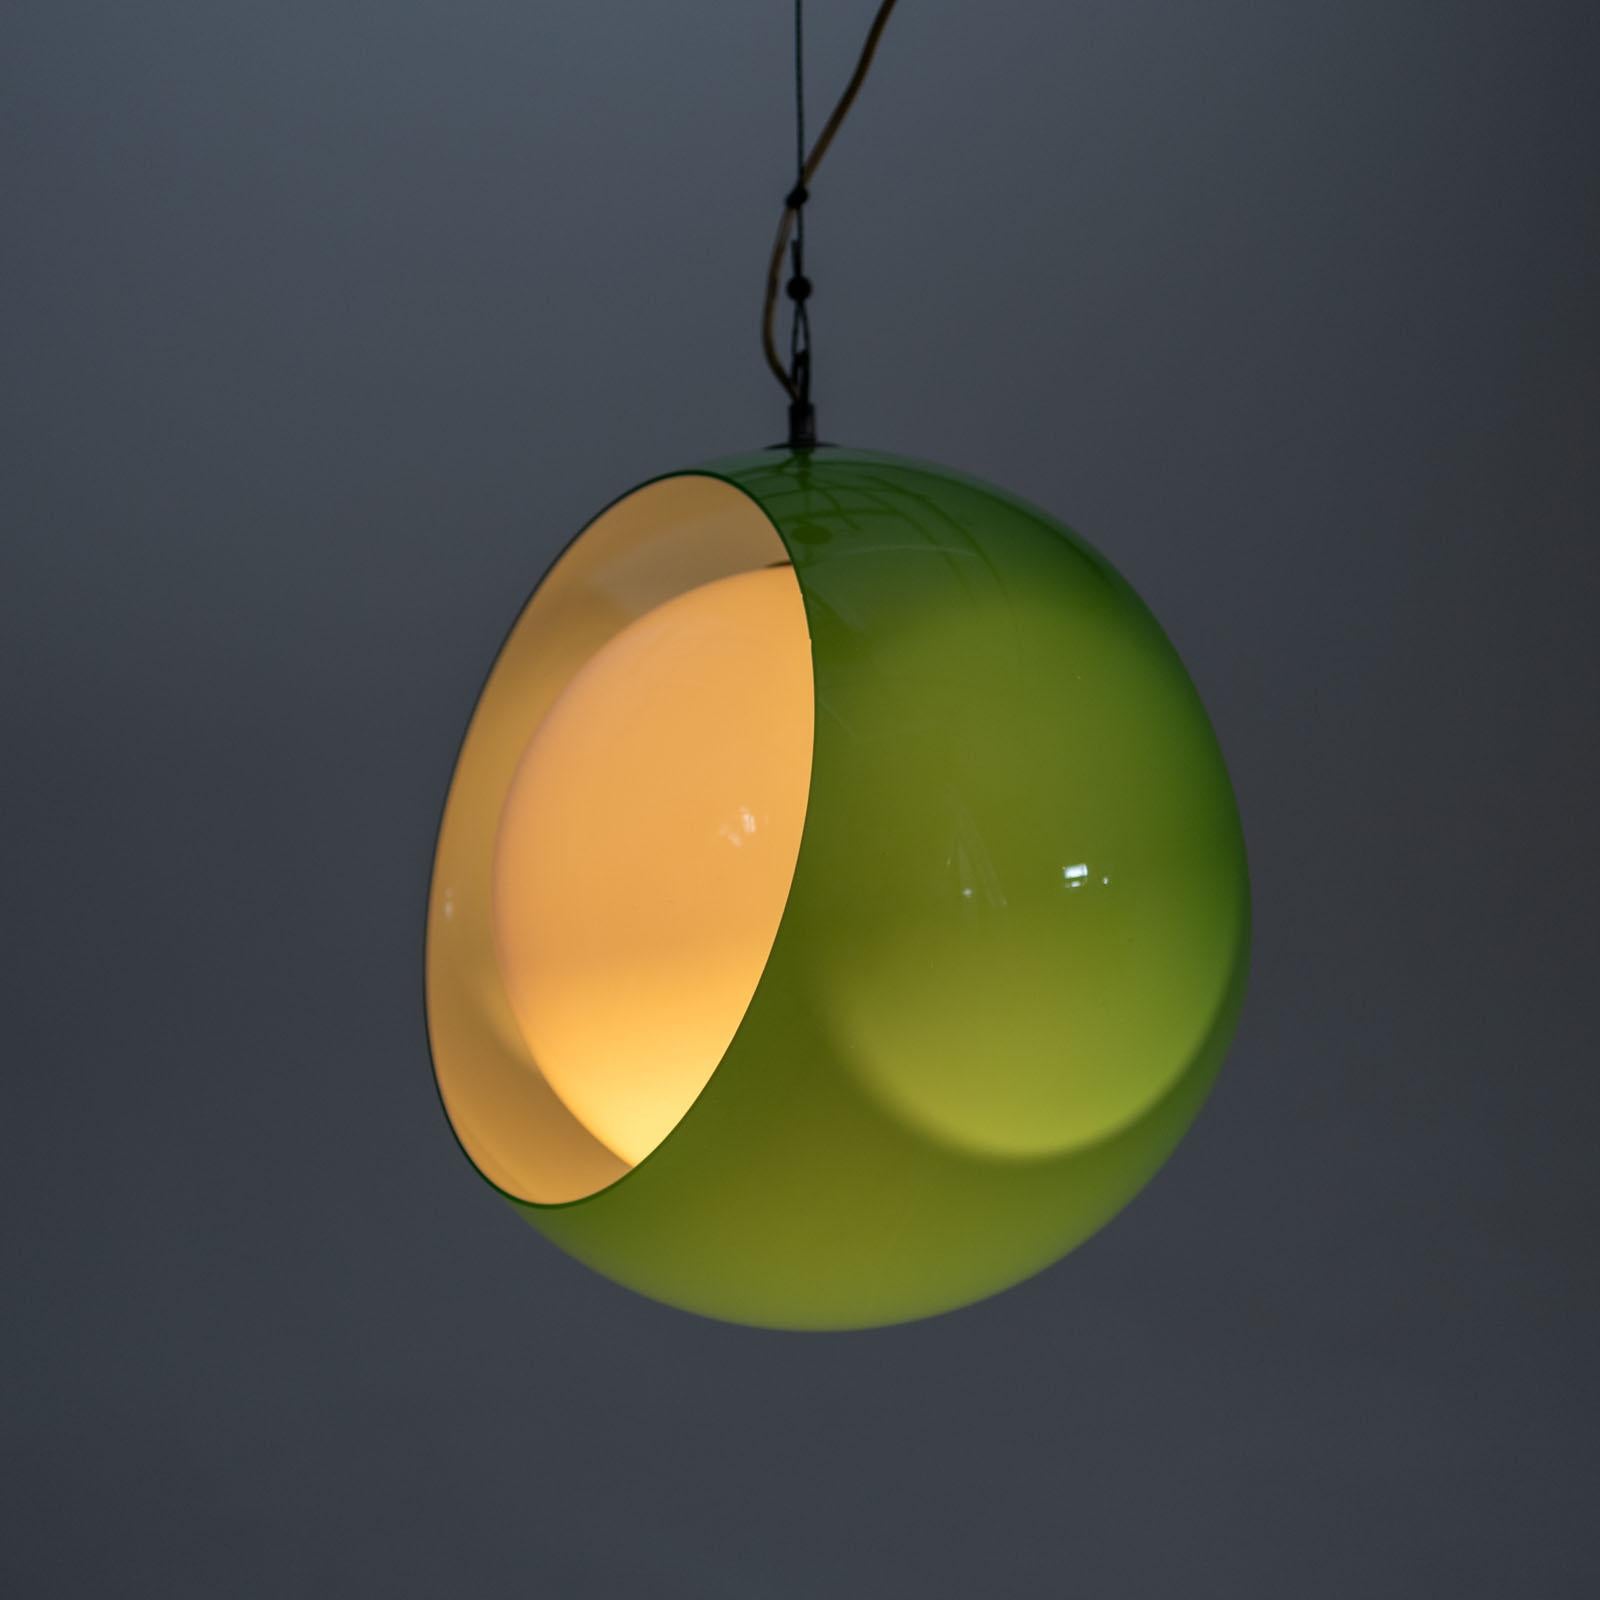 Suspension en verre de Murano de couleur verte, conçue par Carlo Nason pour Mazzega dans les années 1960. La lampe se compose de deux arceaux en verre, qui peuvent être tournés à volonté, de sorte que l'ampoule unique peut également être